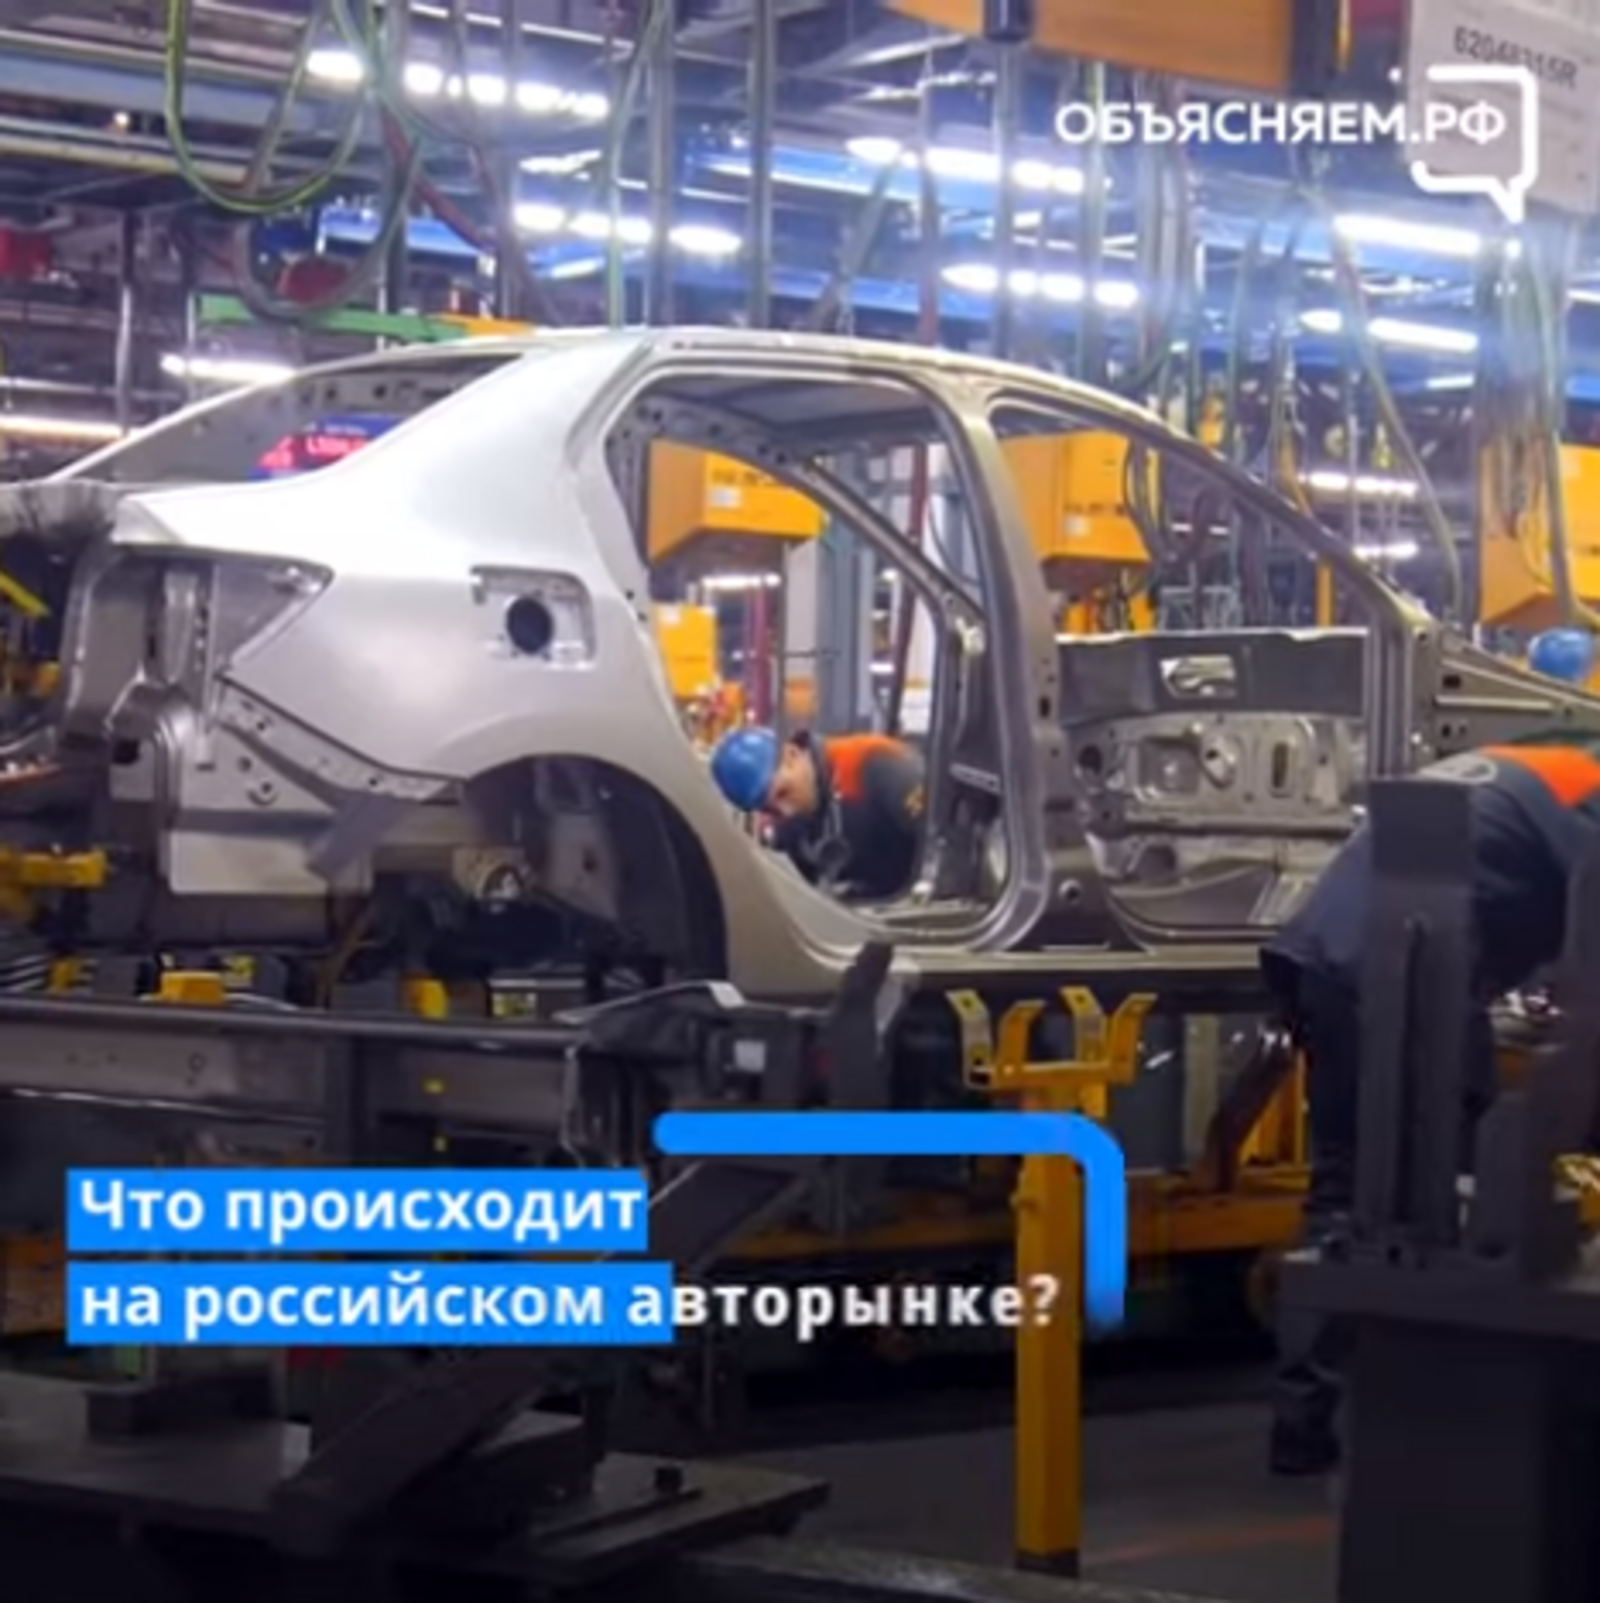 «АвтоВАЗ» не растерялся из-за санкций и собирается выпускать модели автомобилей с минимумом иностранных комплектующих